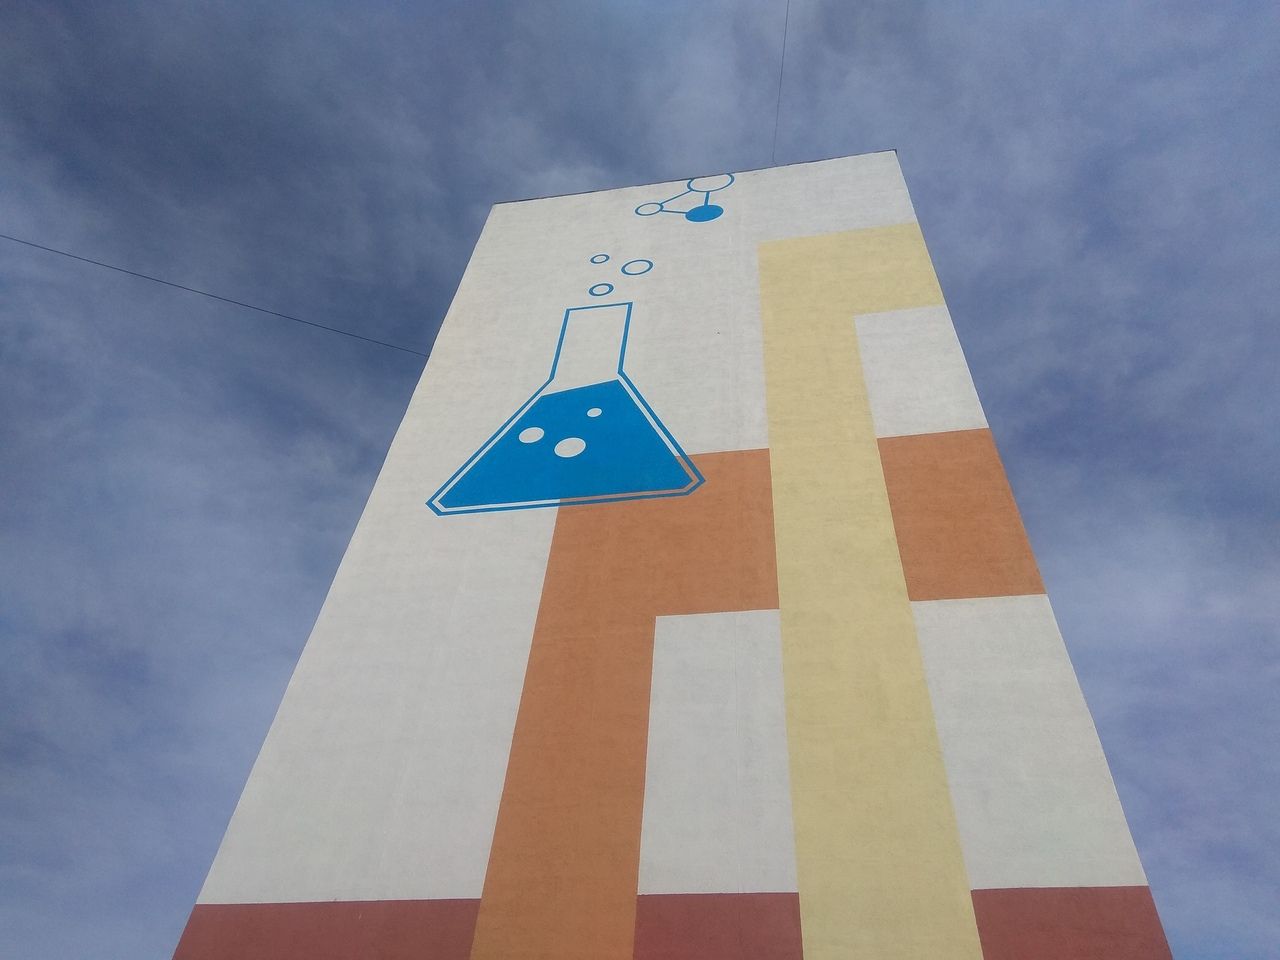 В Менделеевске на фасаде девятиэтажки появилось новое граффити «Колба»